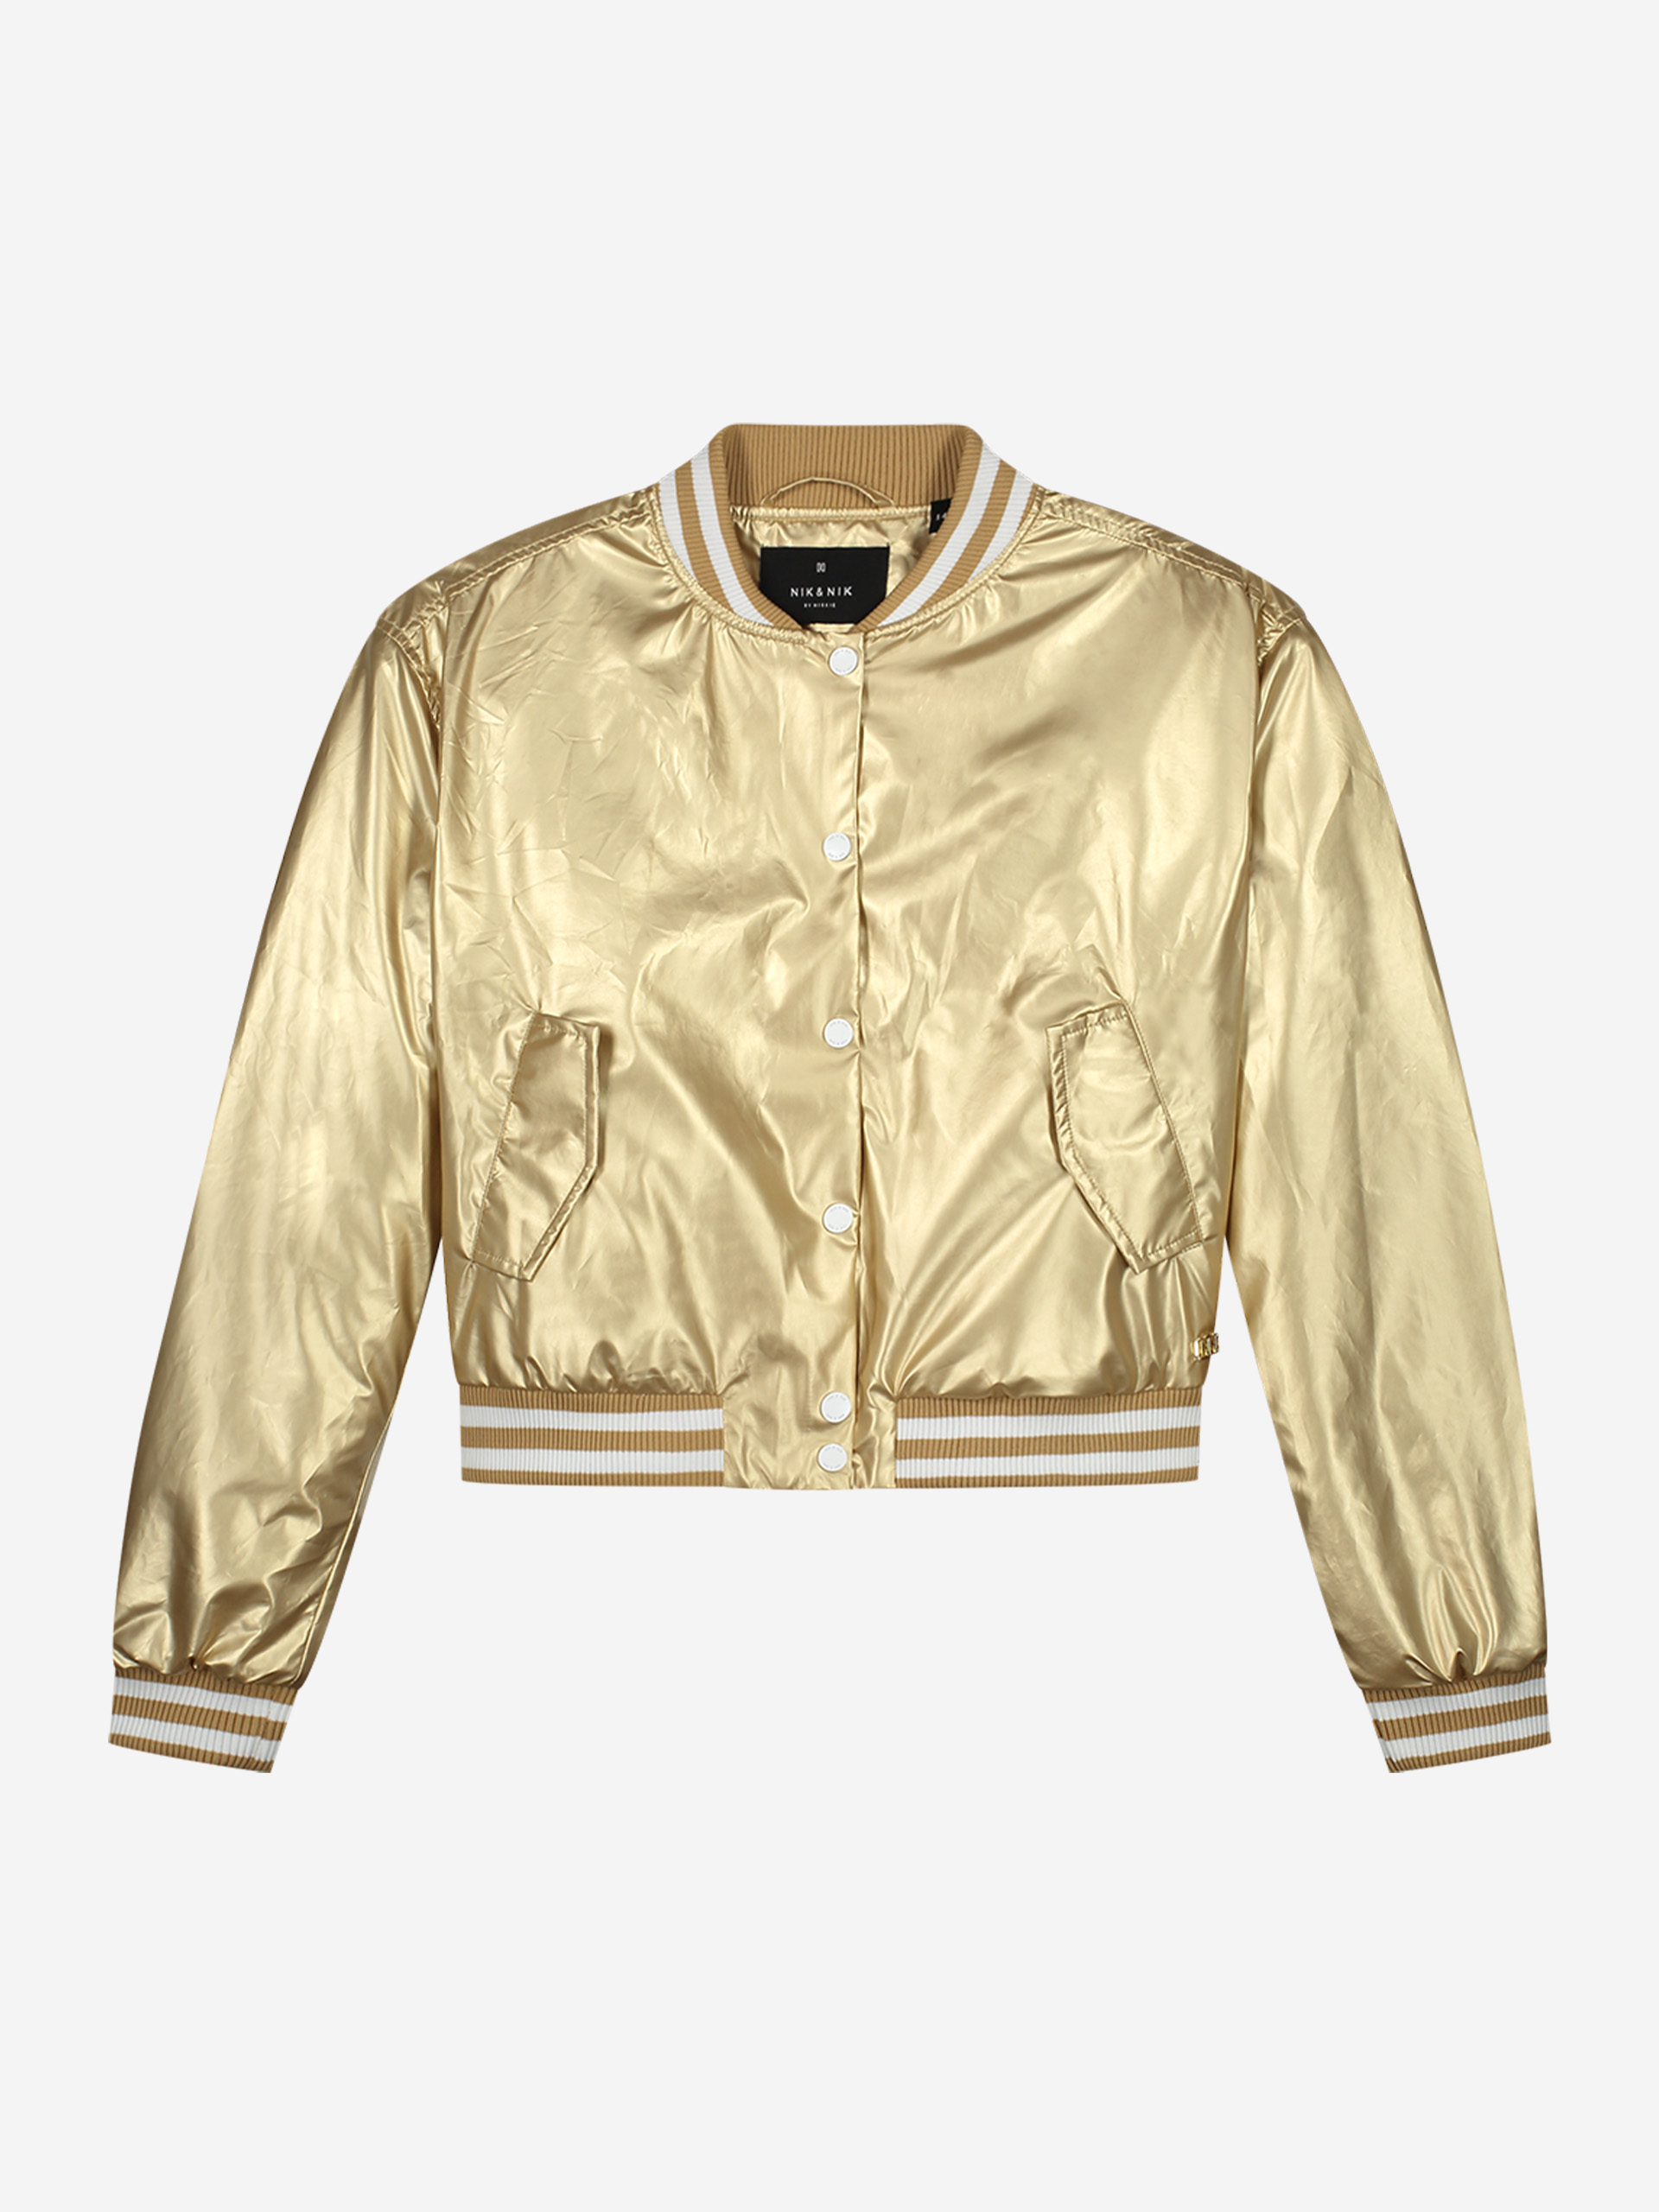 Golden bomber jacket